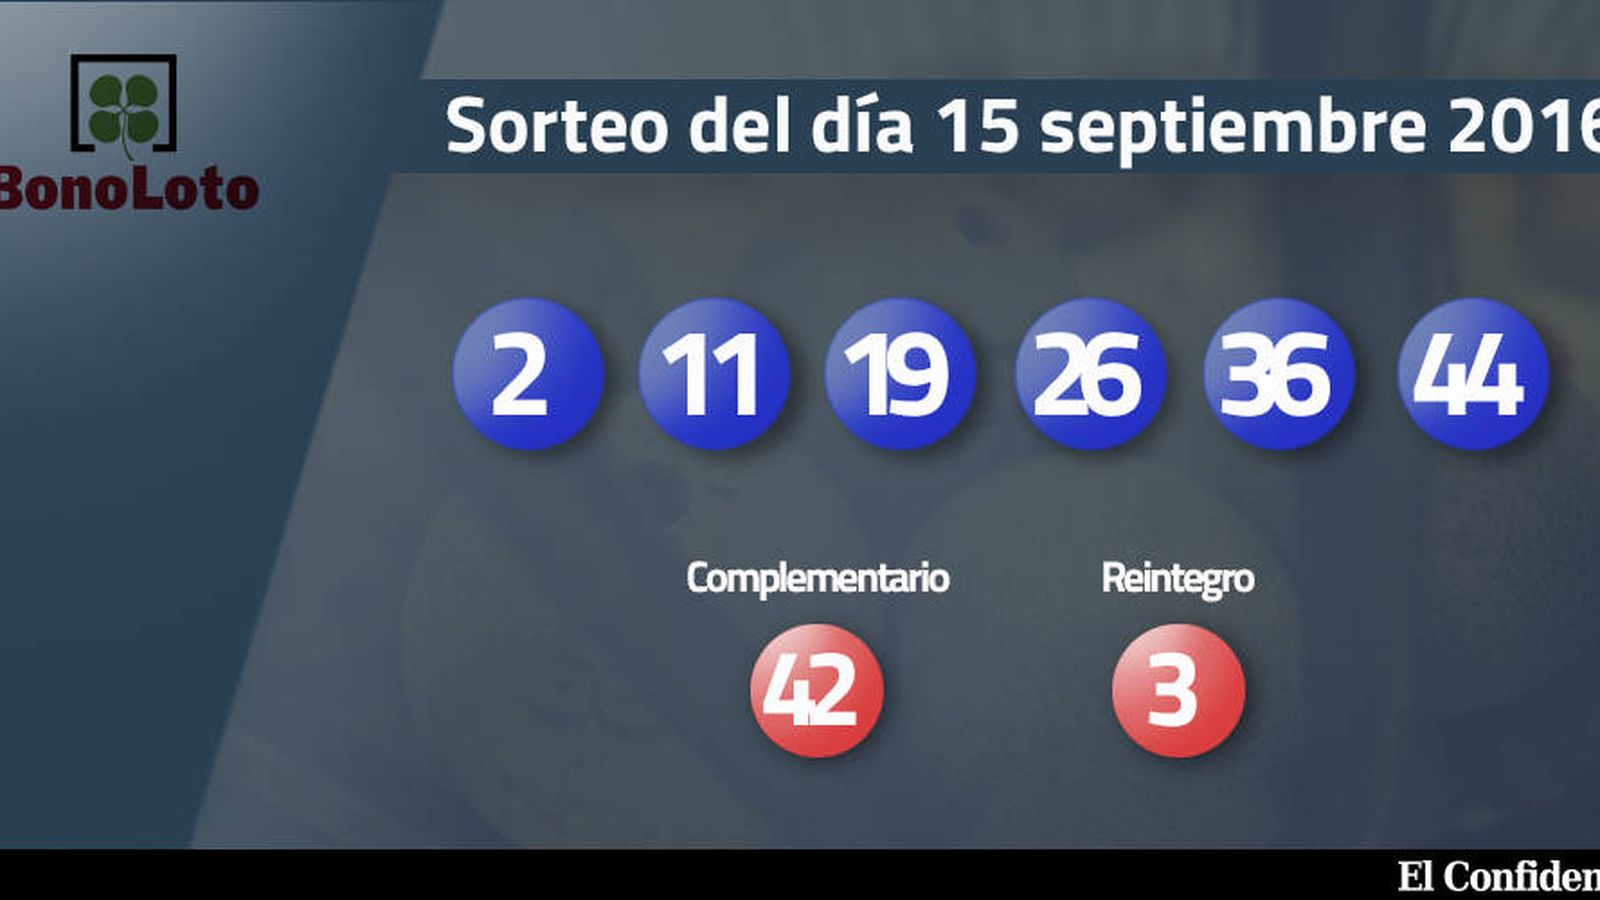 Foto: Resultados del sorteo de la Bonoloto del 15 septiembre 2016 (EC)